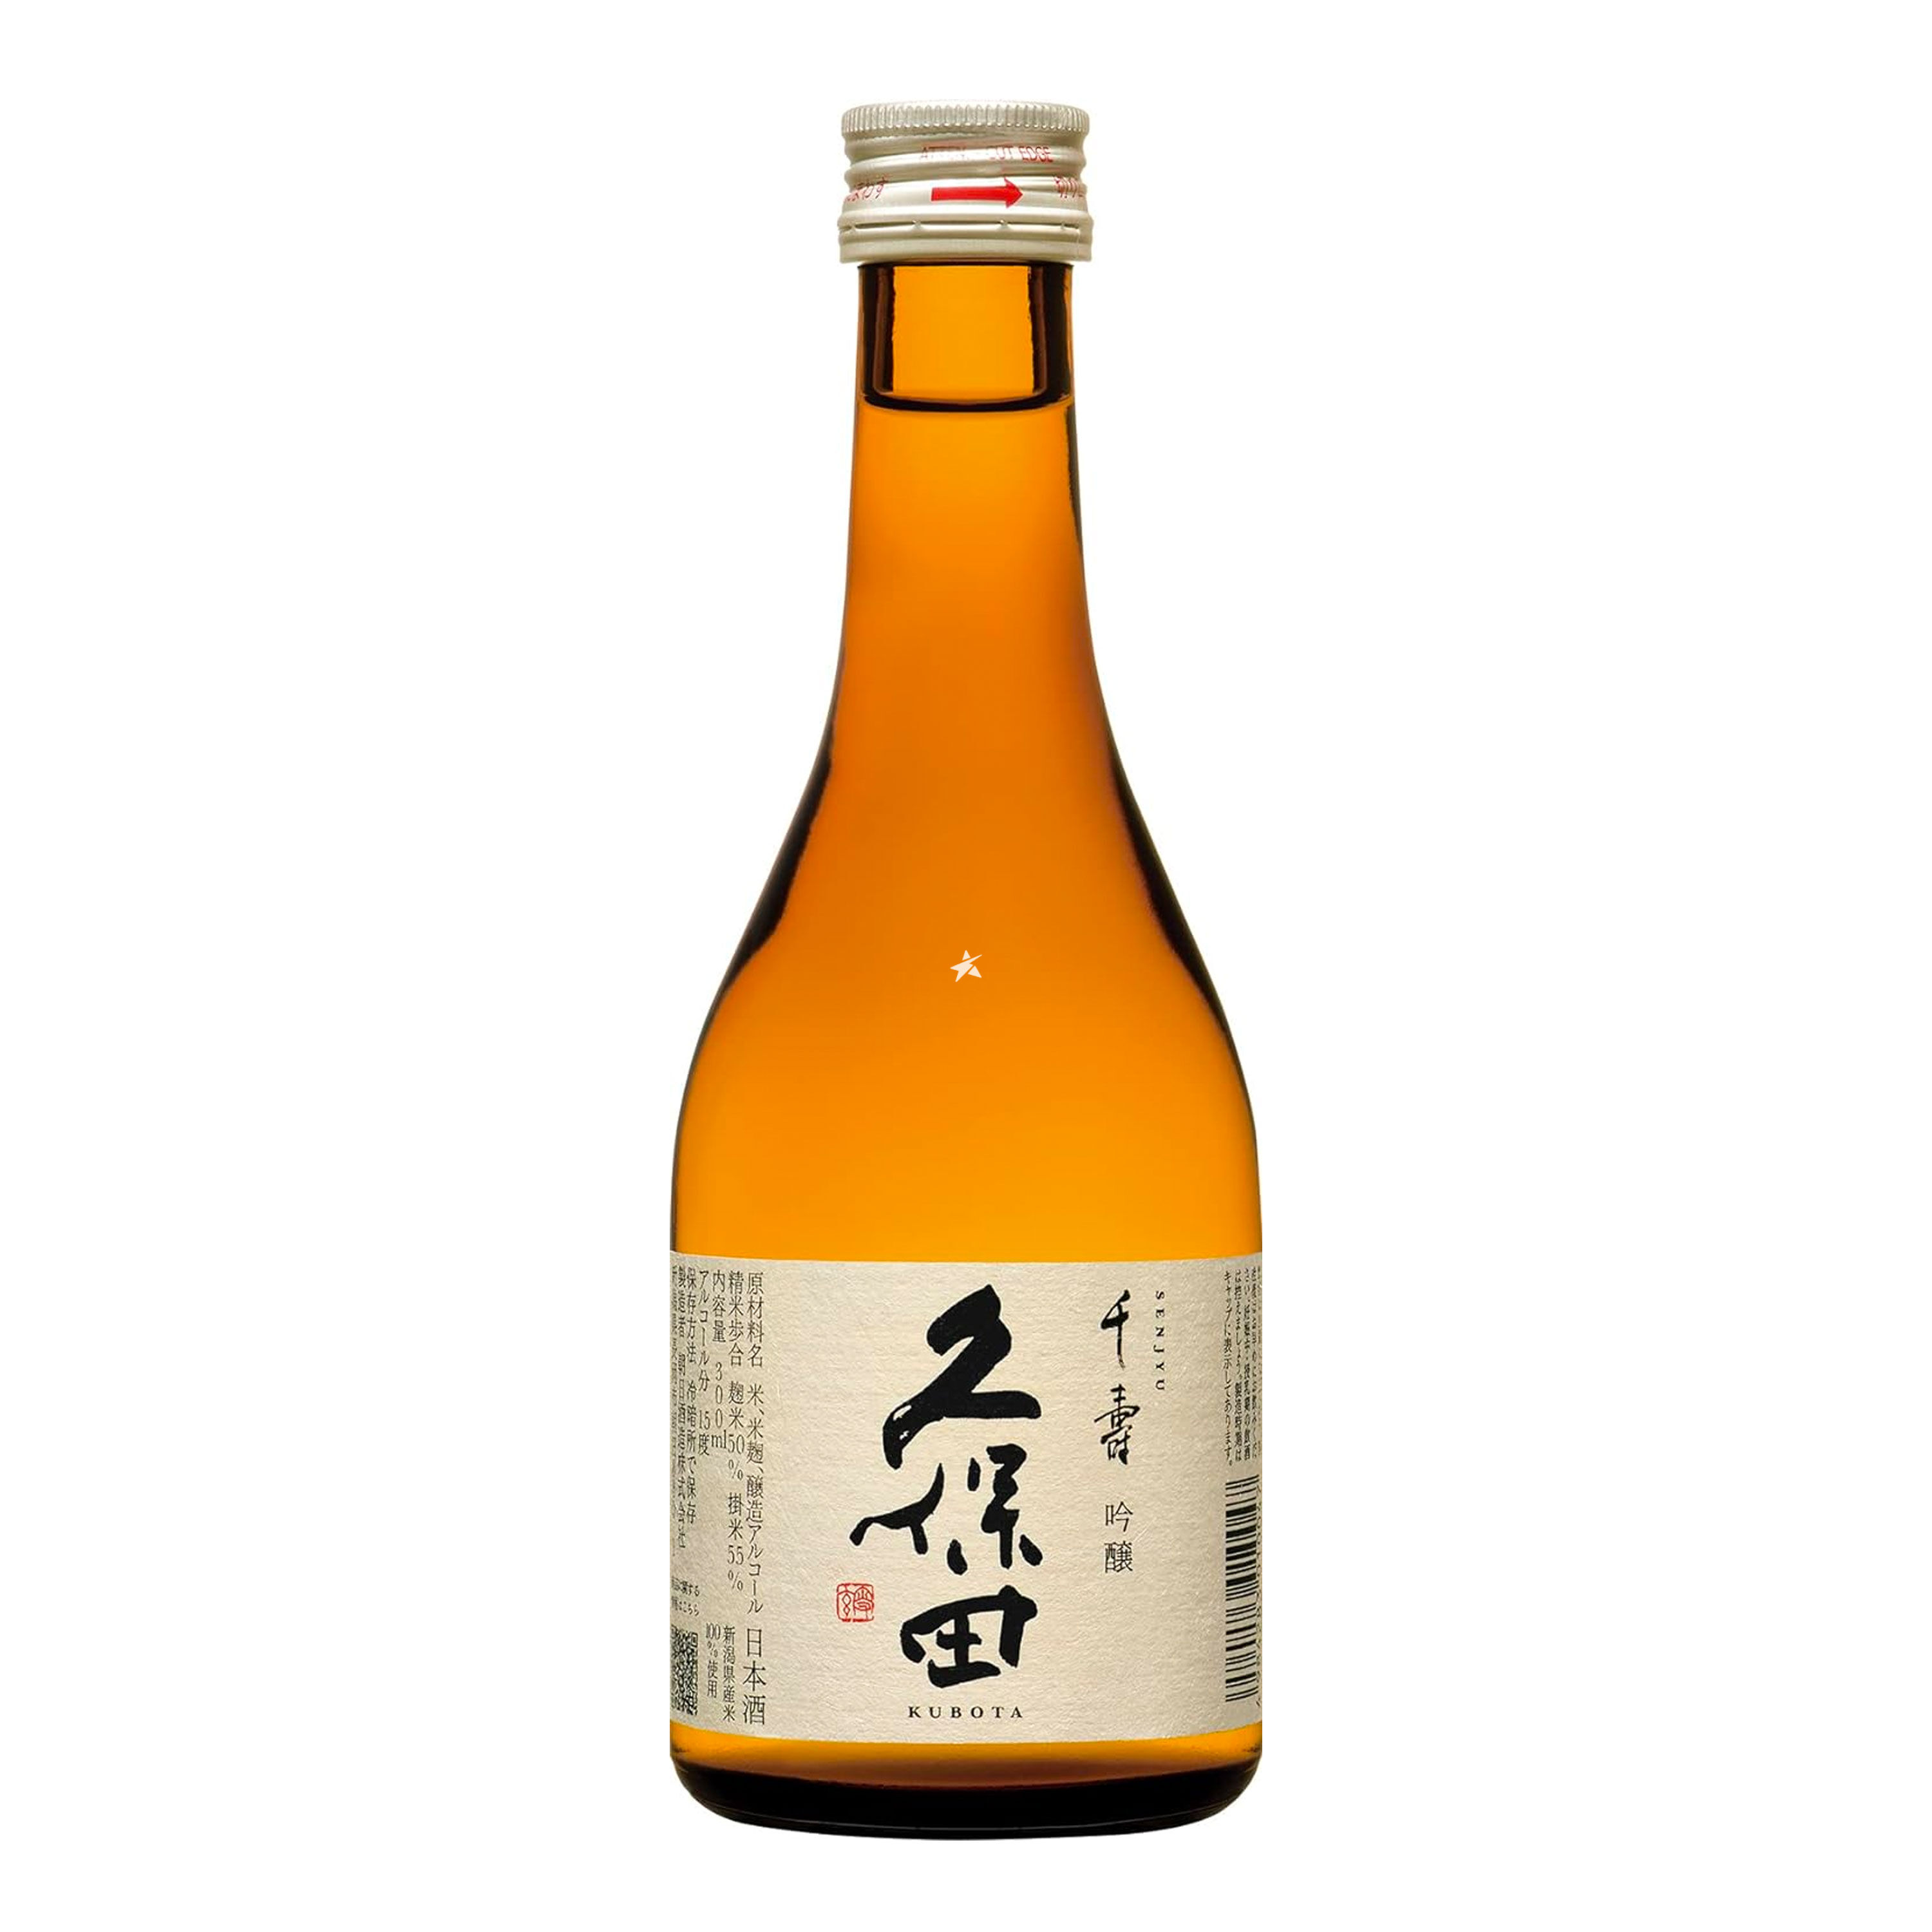 Buy Kubota Senjyu Ginjo -Sake 300ml 15.6% Alc./Vol - Japanese 